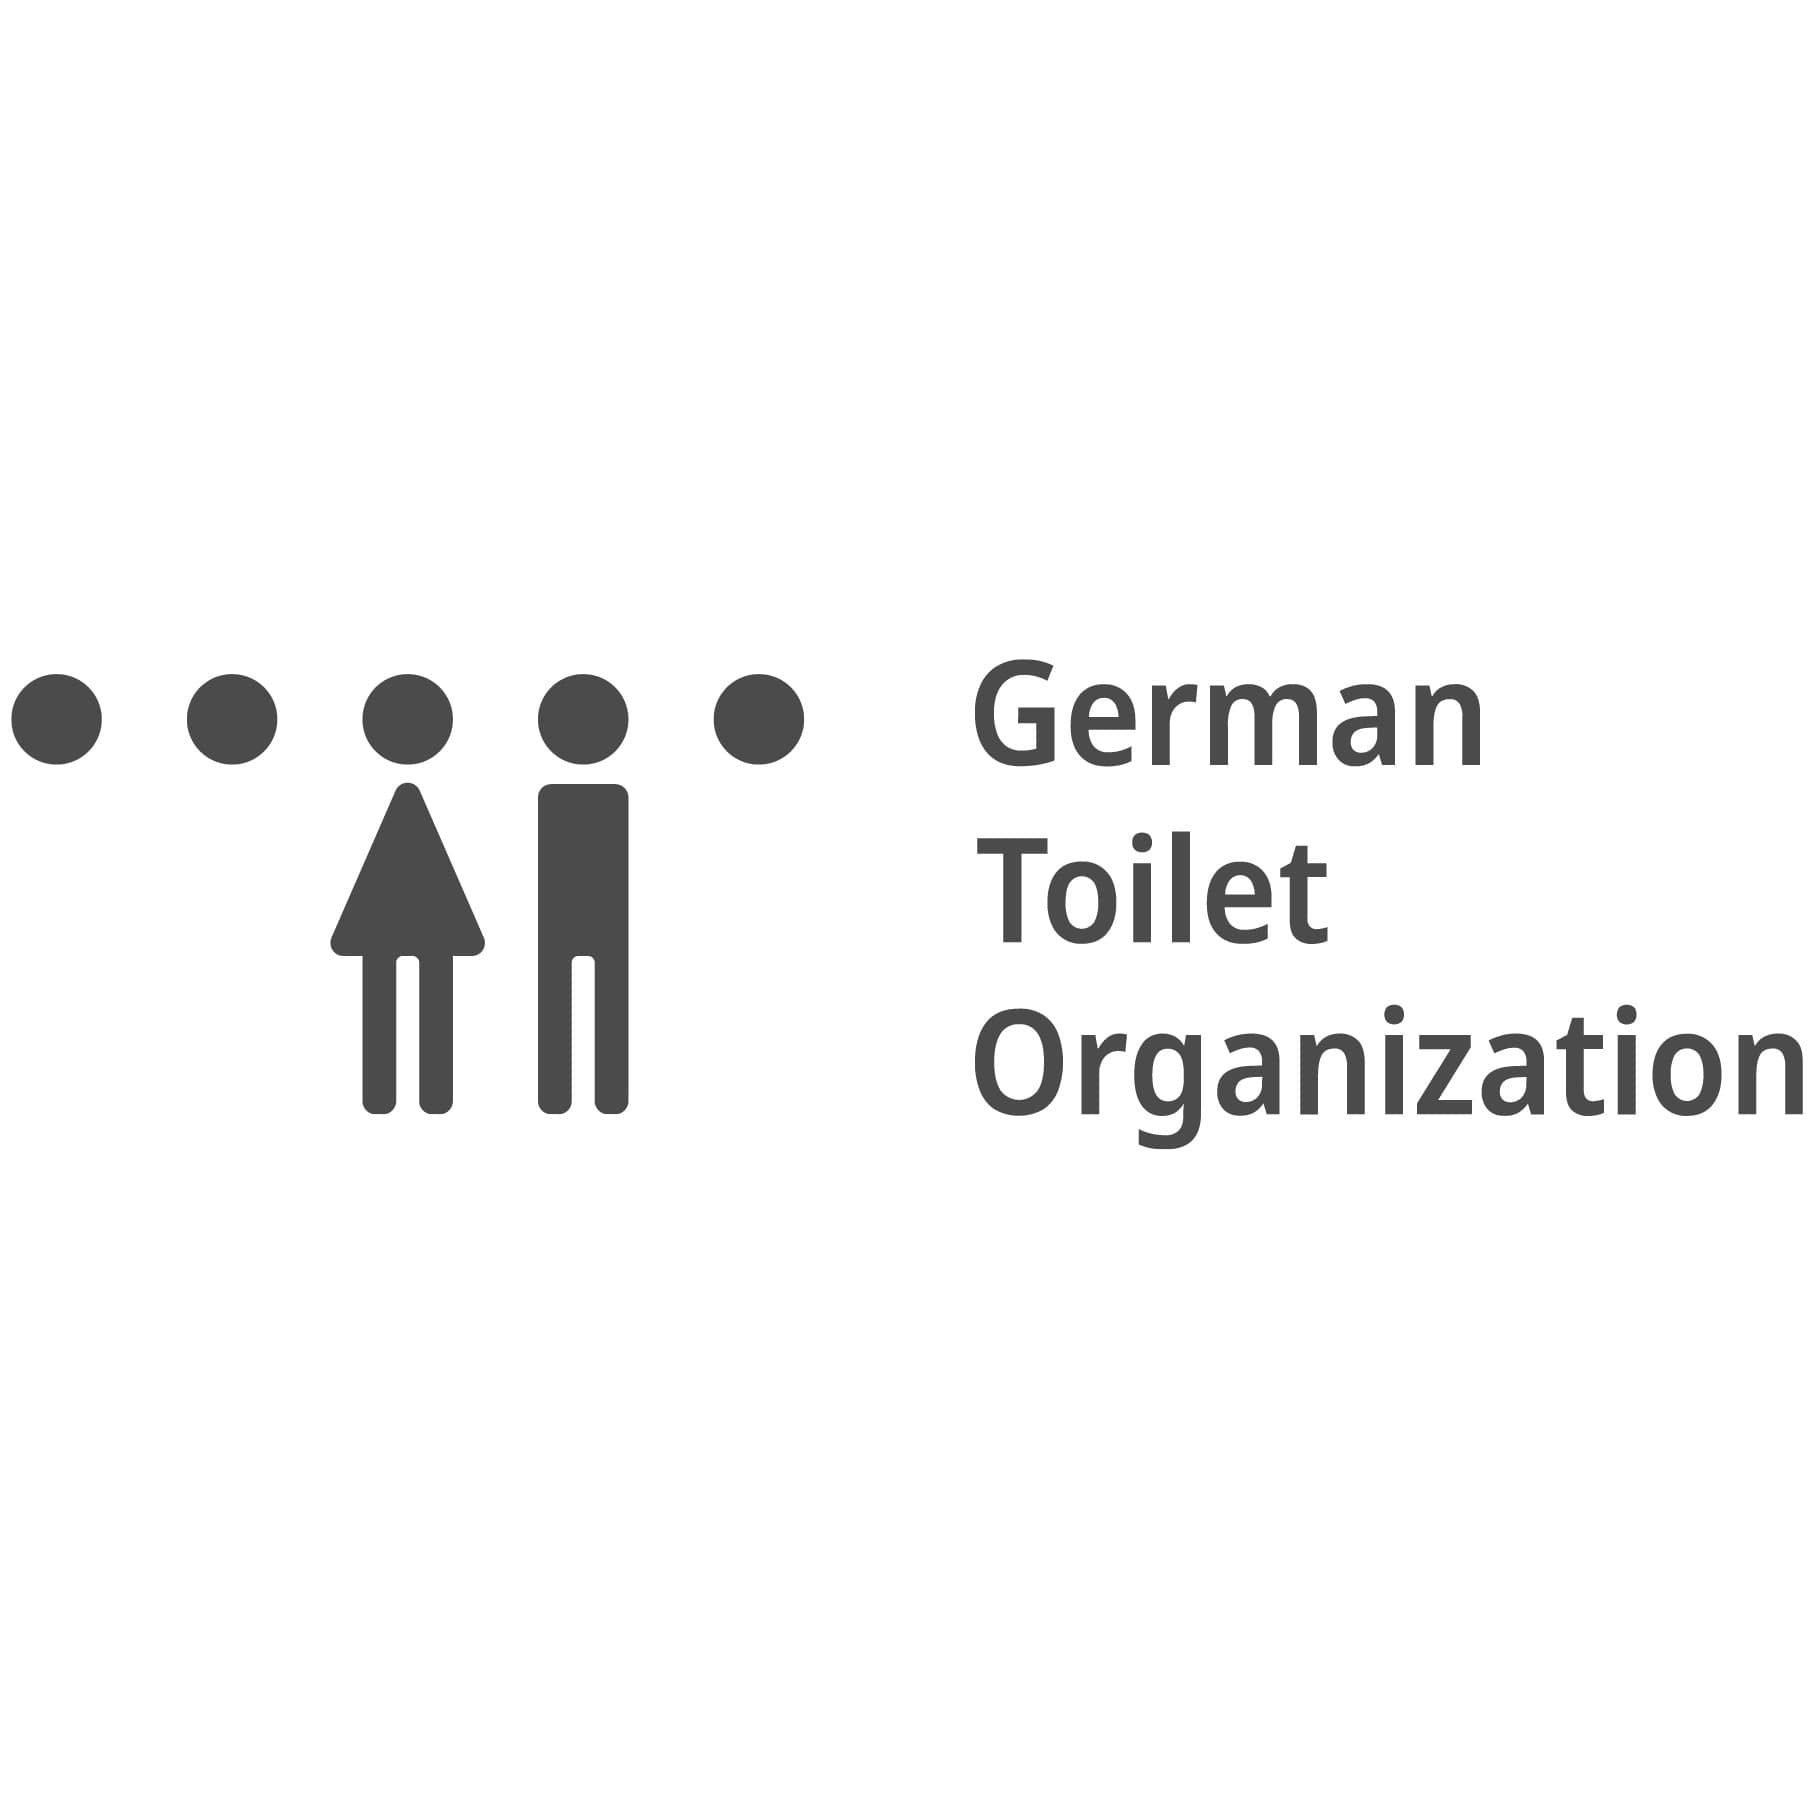 German Toilet Organization logo